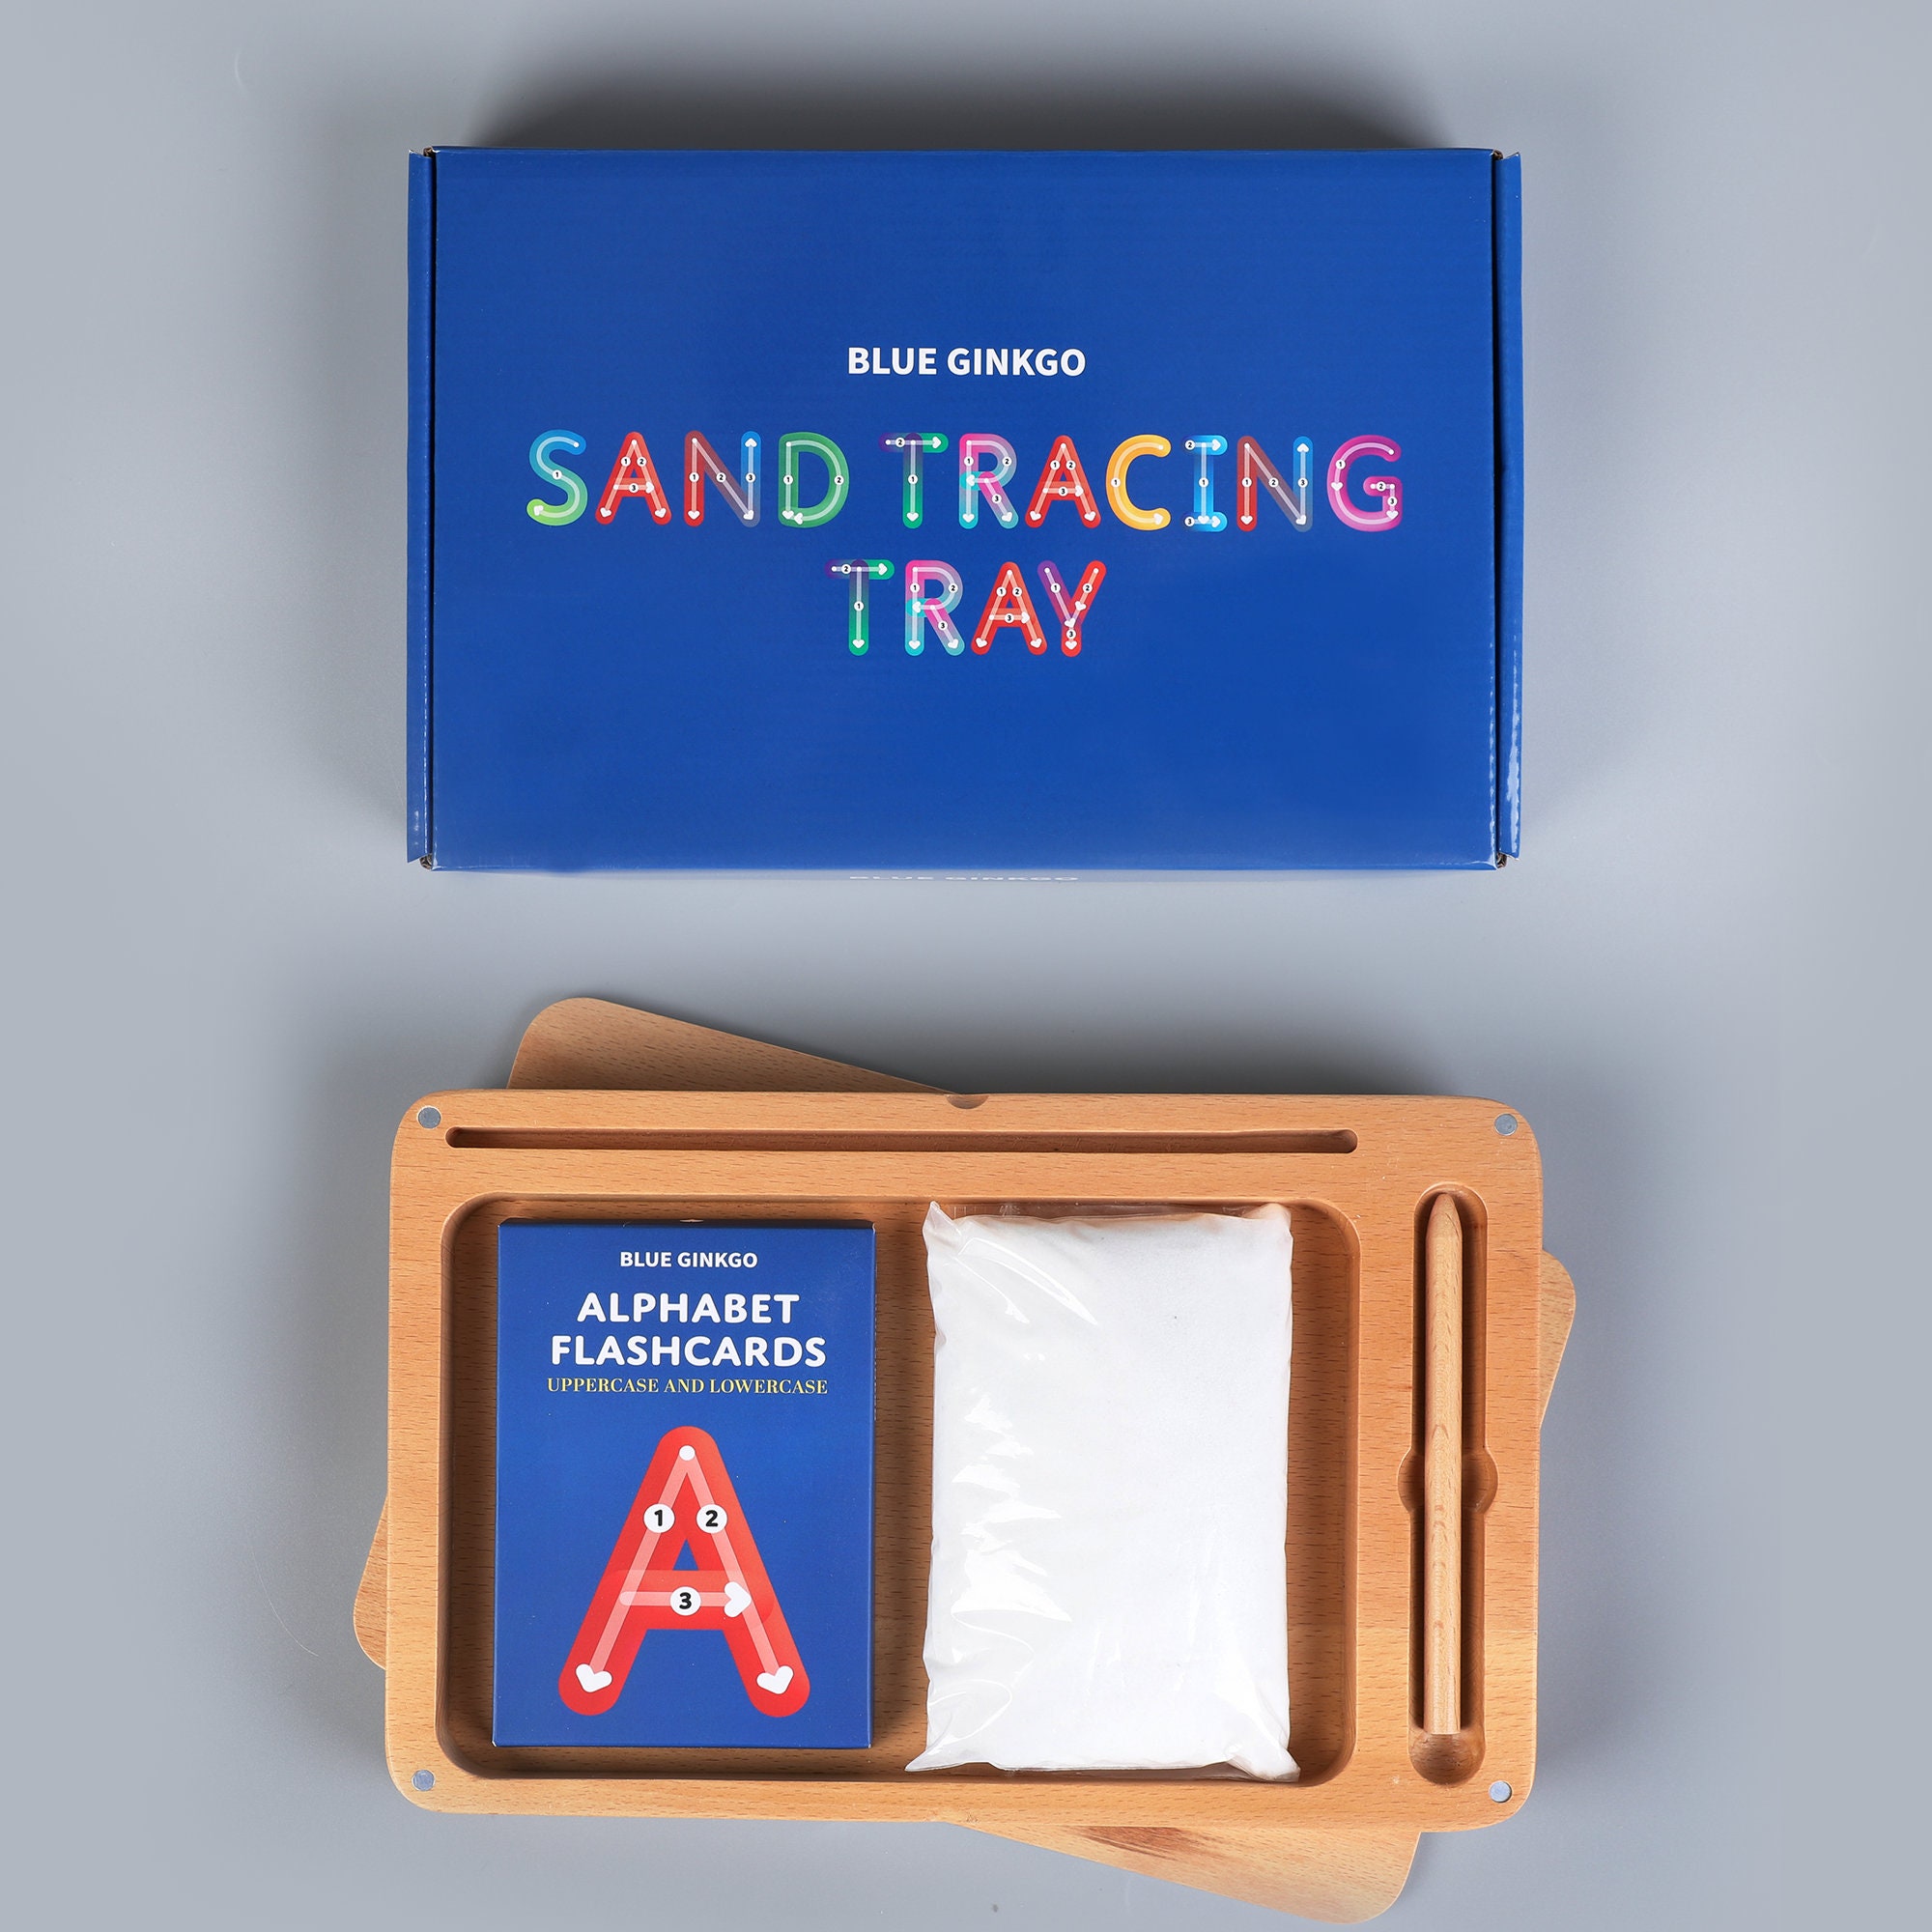 Three Part Card Tray, Flashcard Tray Flashcard Holder Montessori